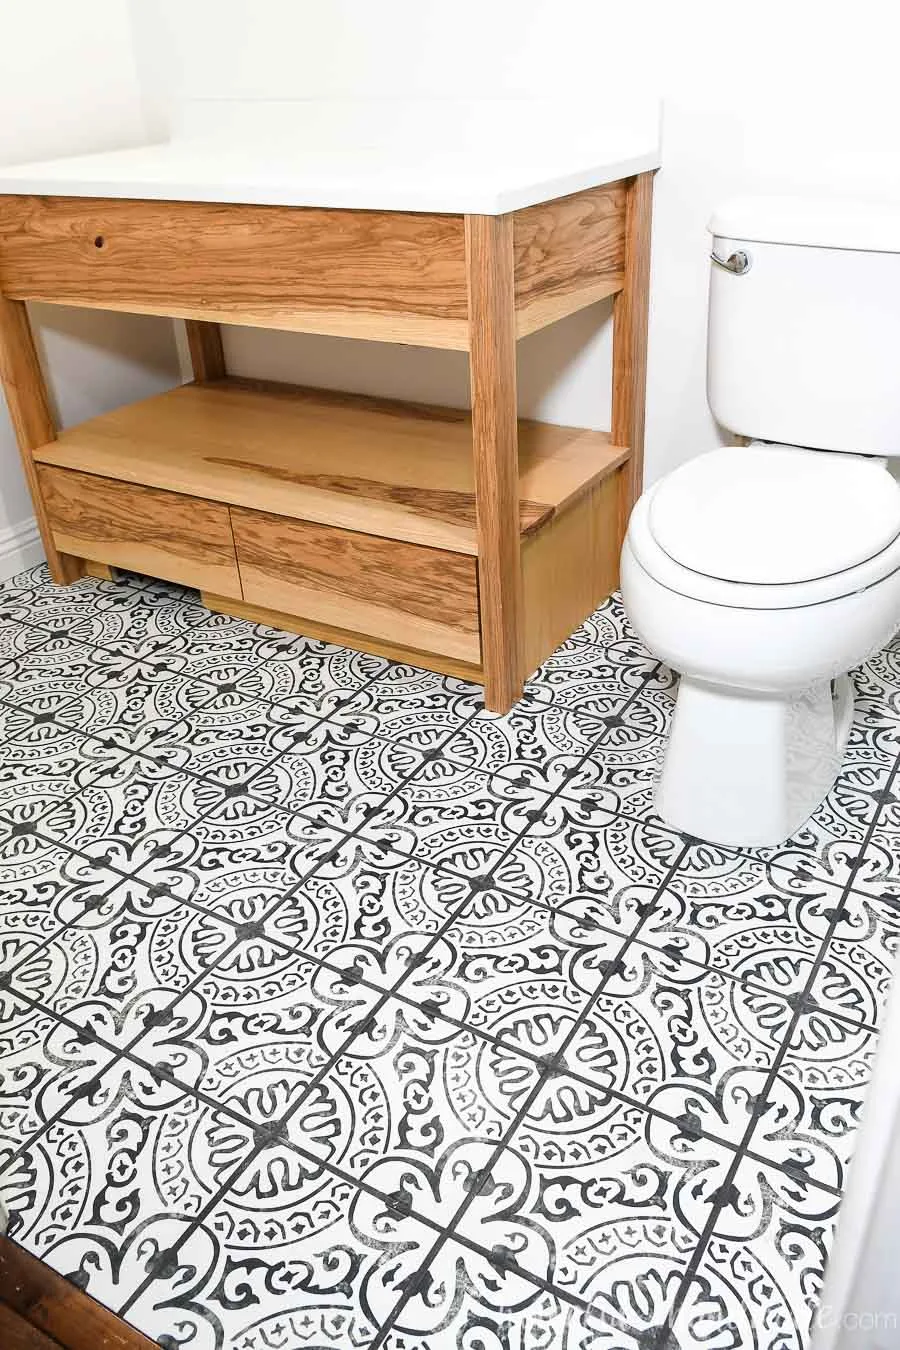 Laying Floor Tiles In A Small Bathroom, Can I Retile My Bathroom Floor Myself